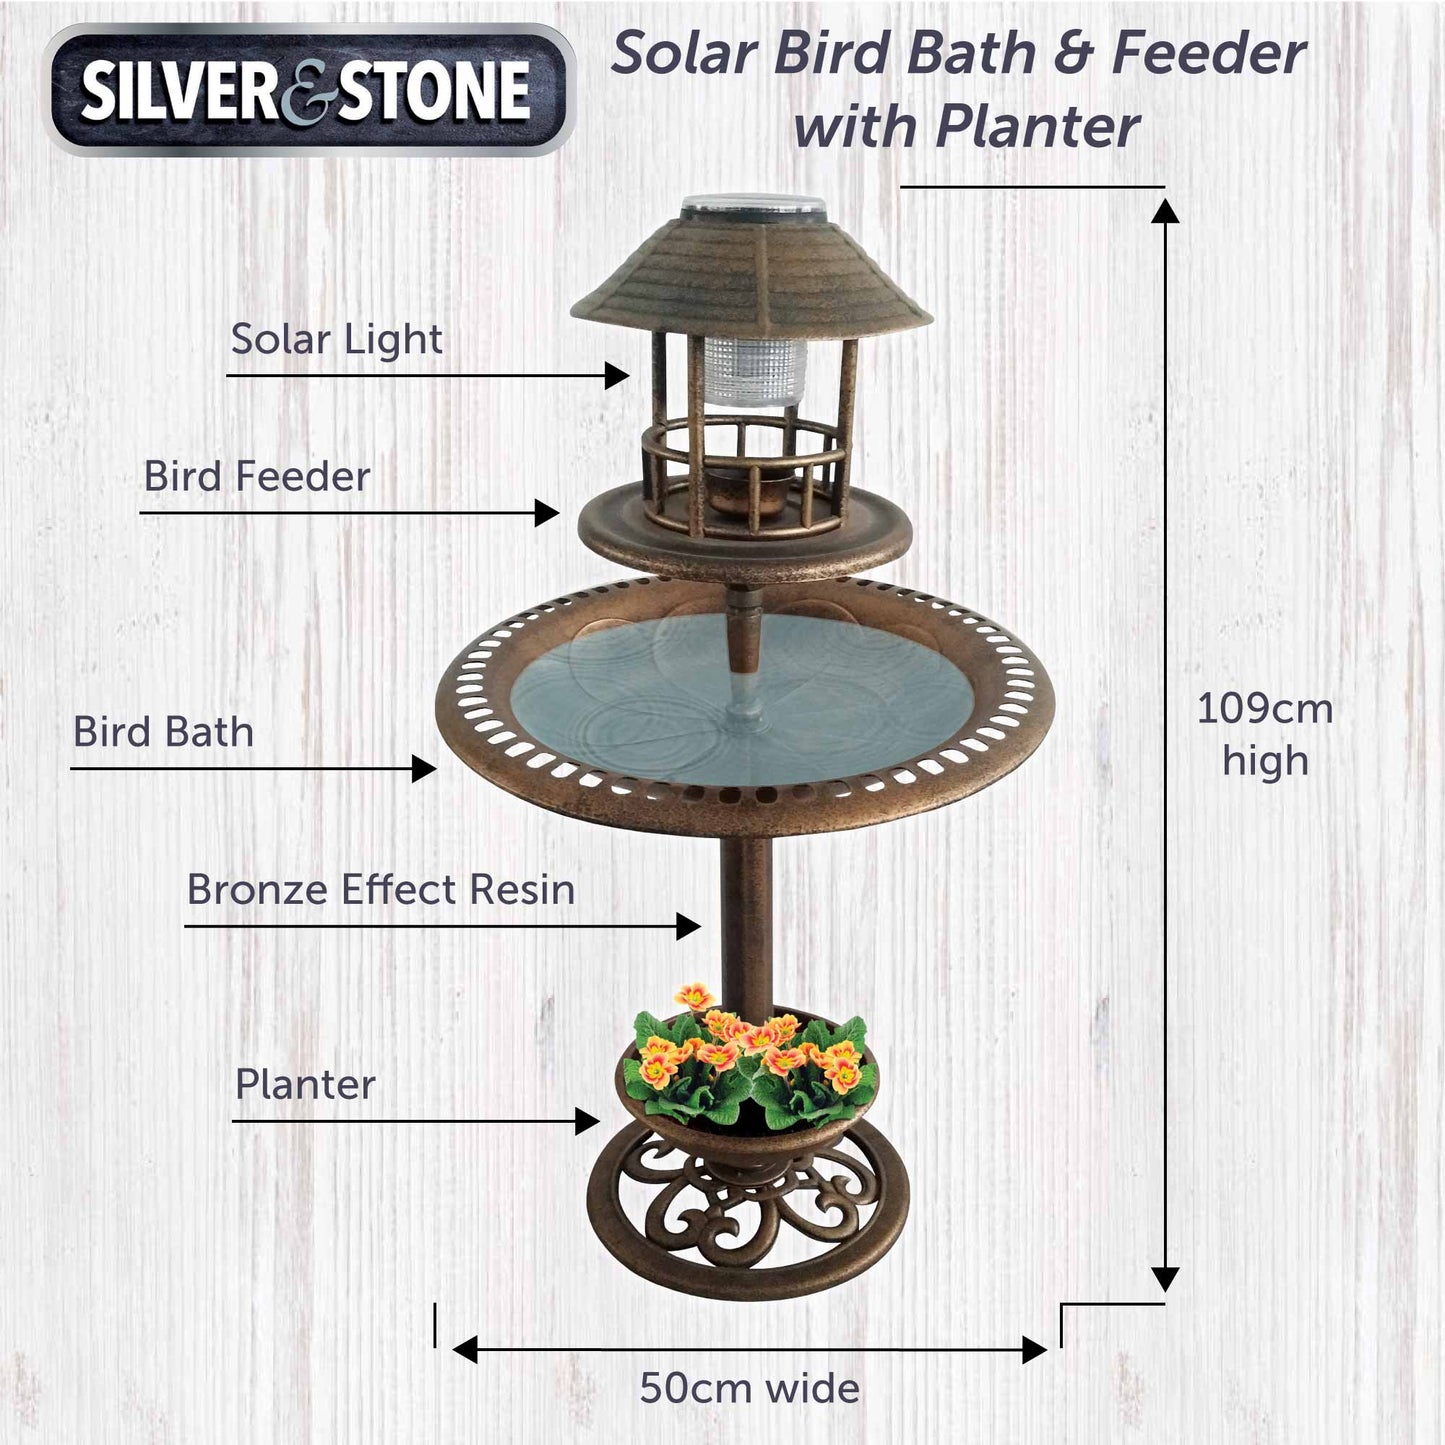 Silver & Stone Solar Bird Bath & Feeder 109cm